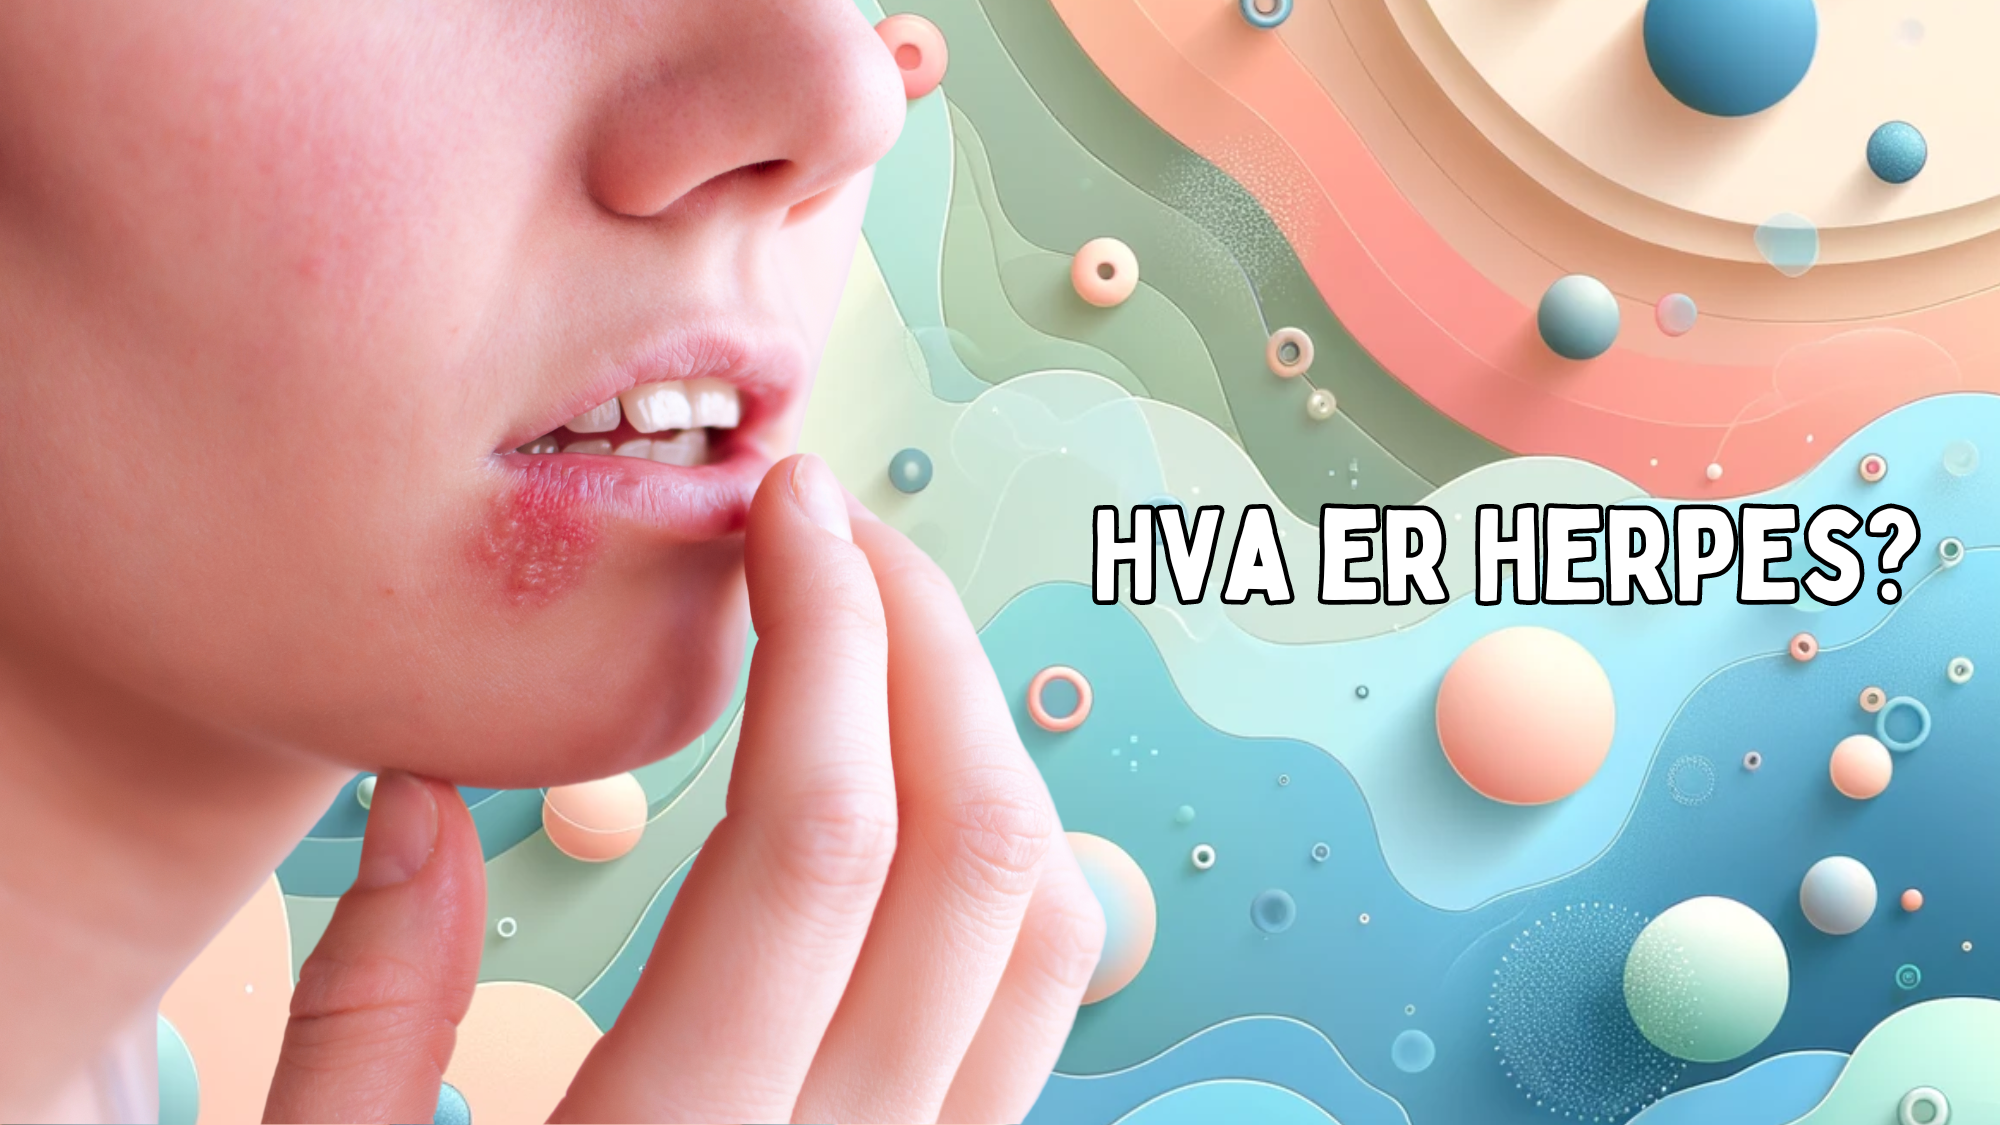 Bilde av en person som peker på munnherpes, med teksten 'HVA ER HERPES?' på en pastellfarget bakgrunn.